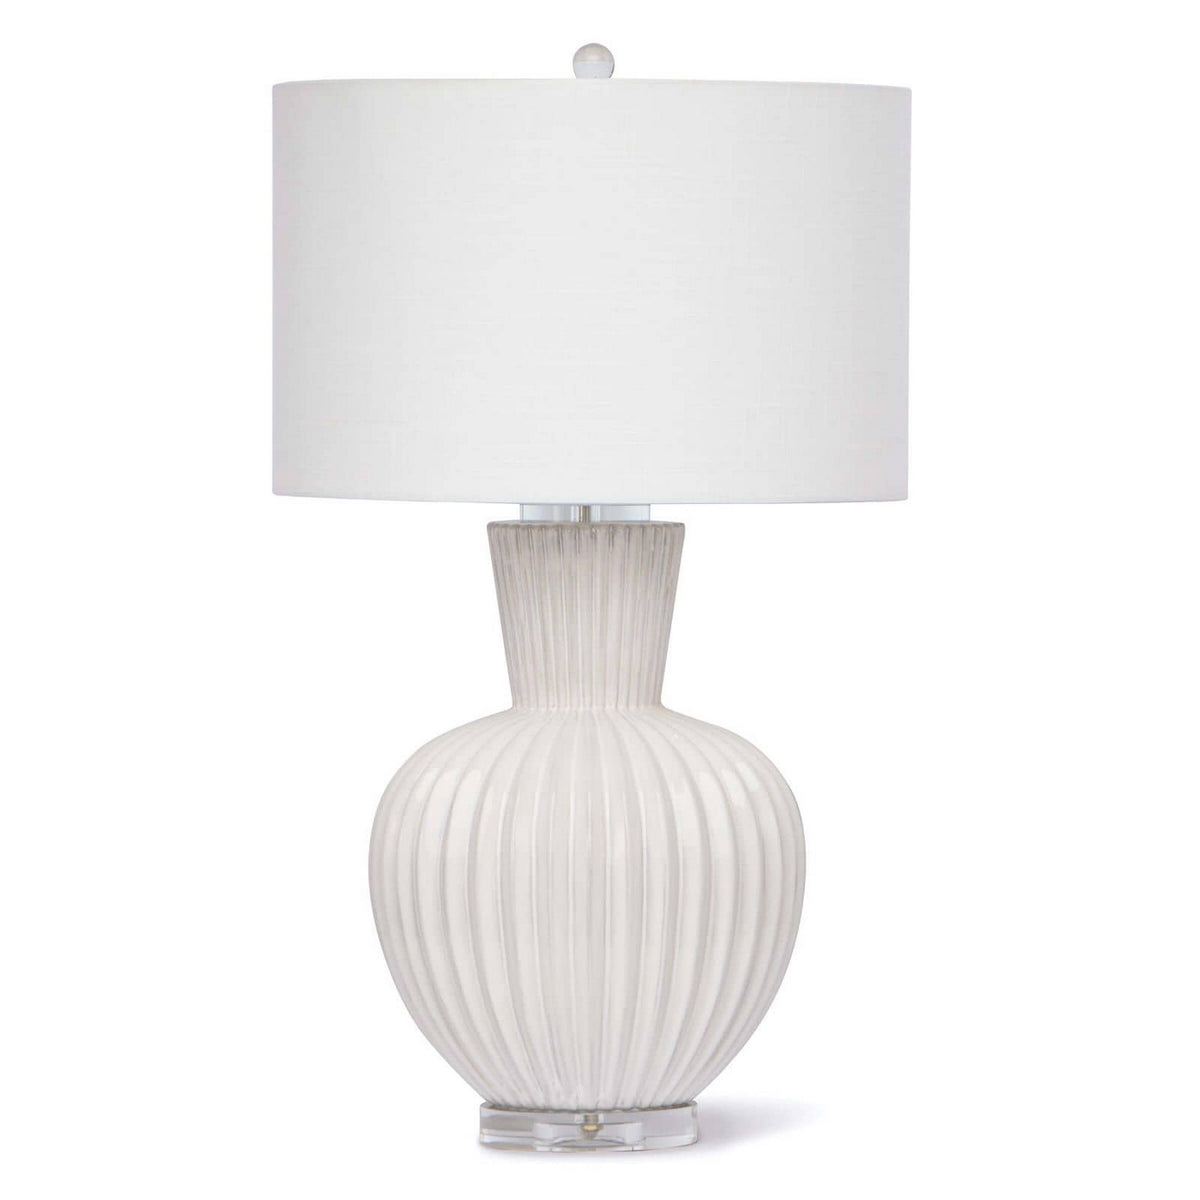 Regina Andrew - 13-1274 - One Light Table Lamp - Madrid - White